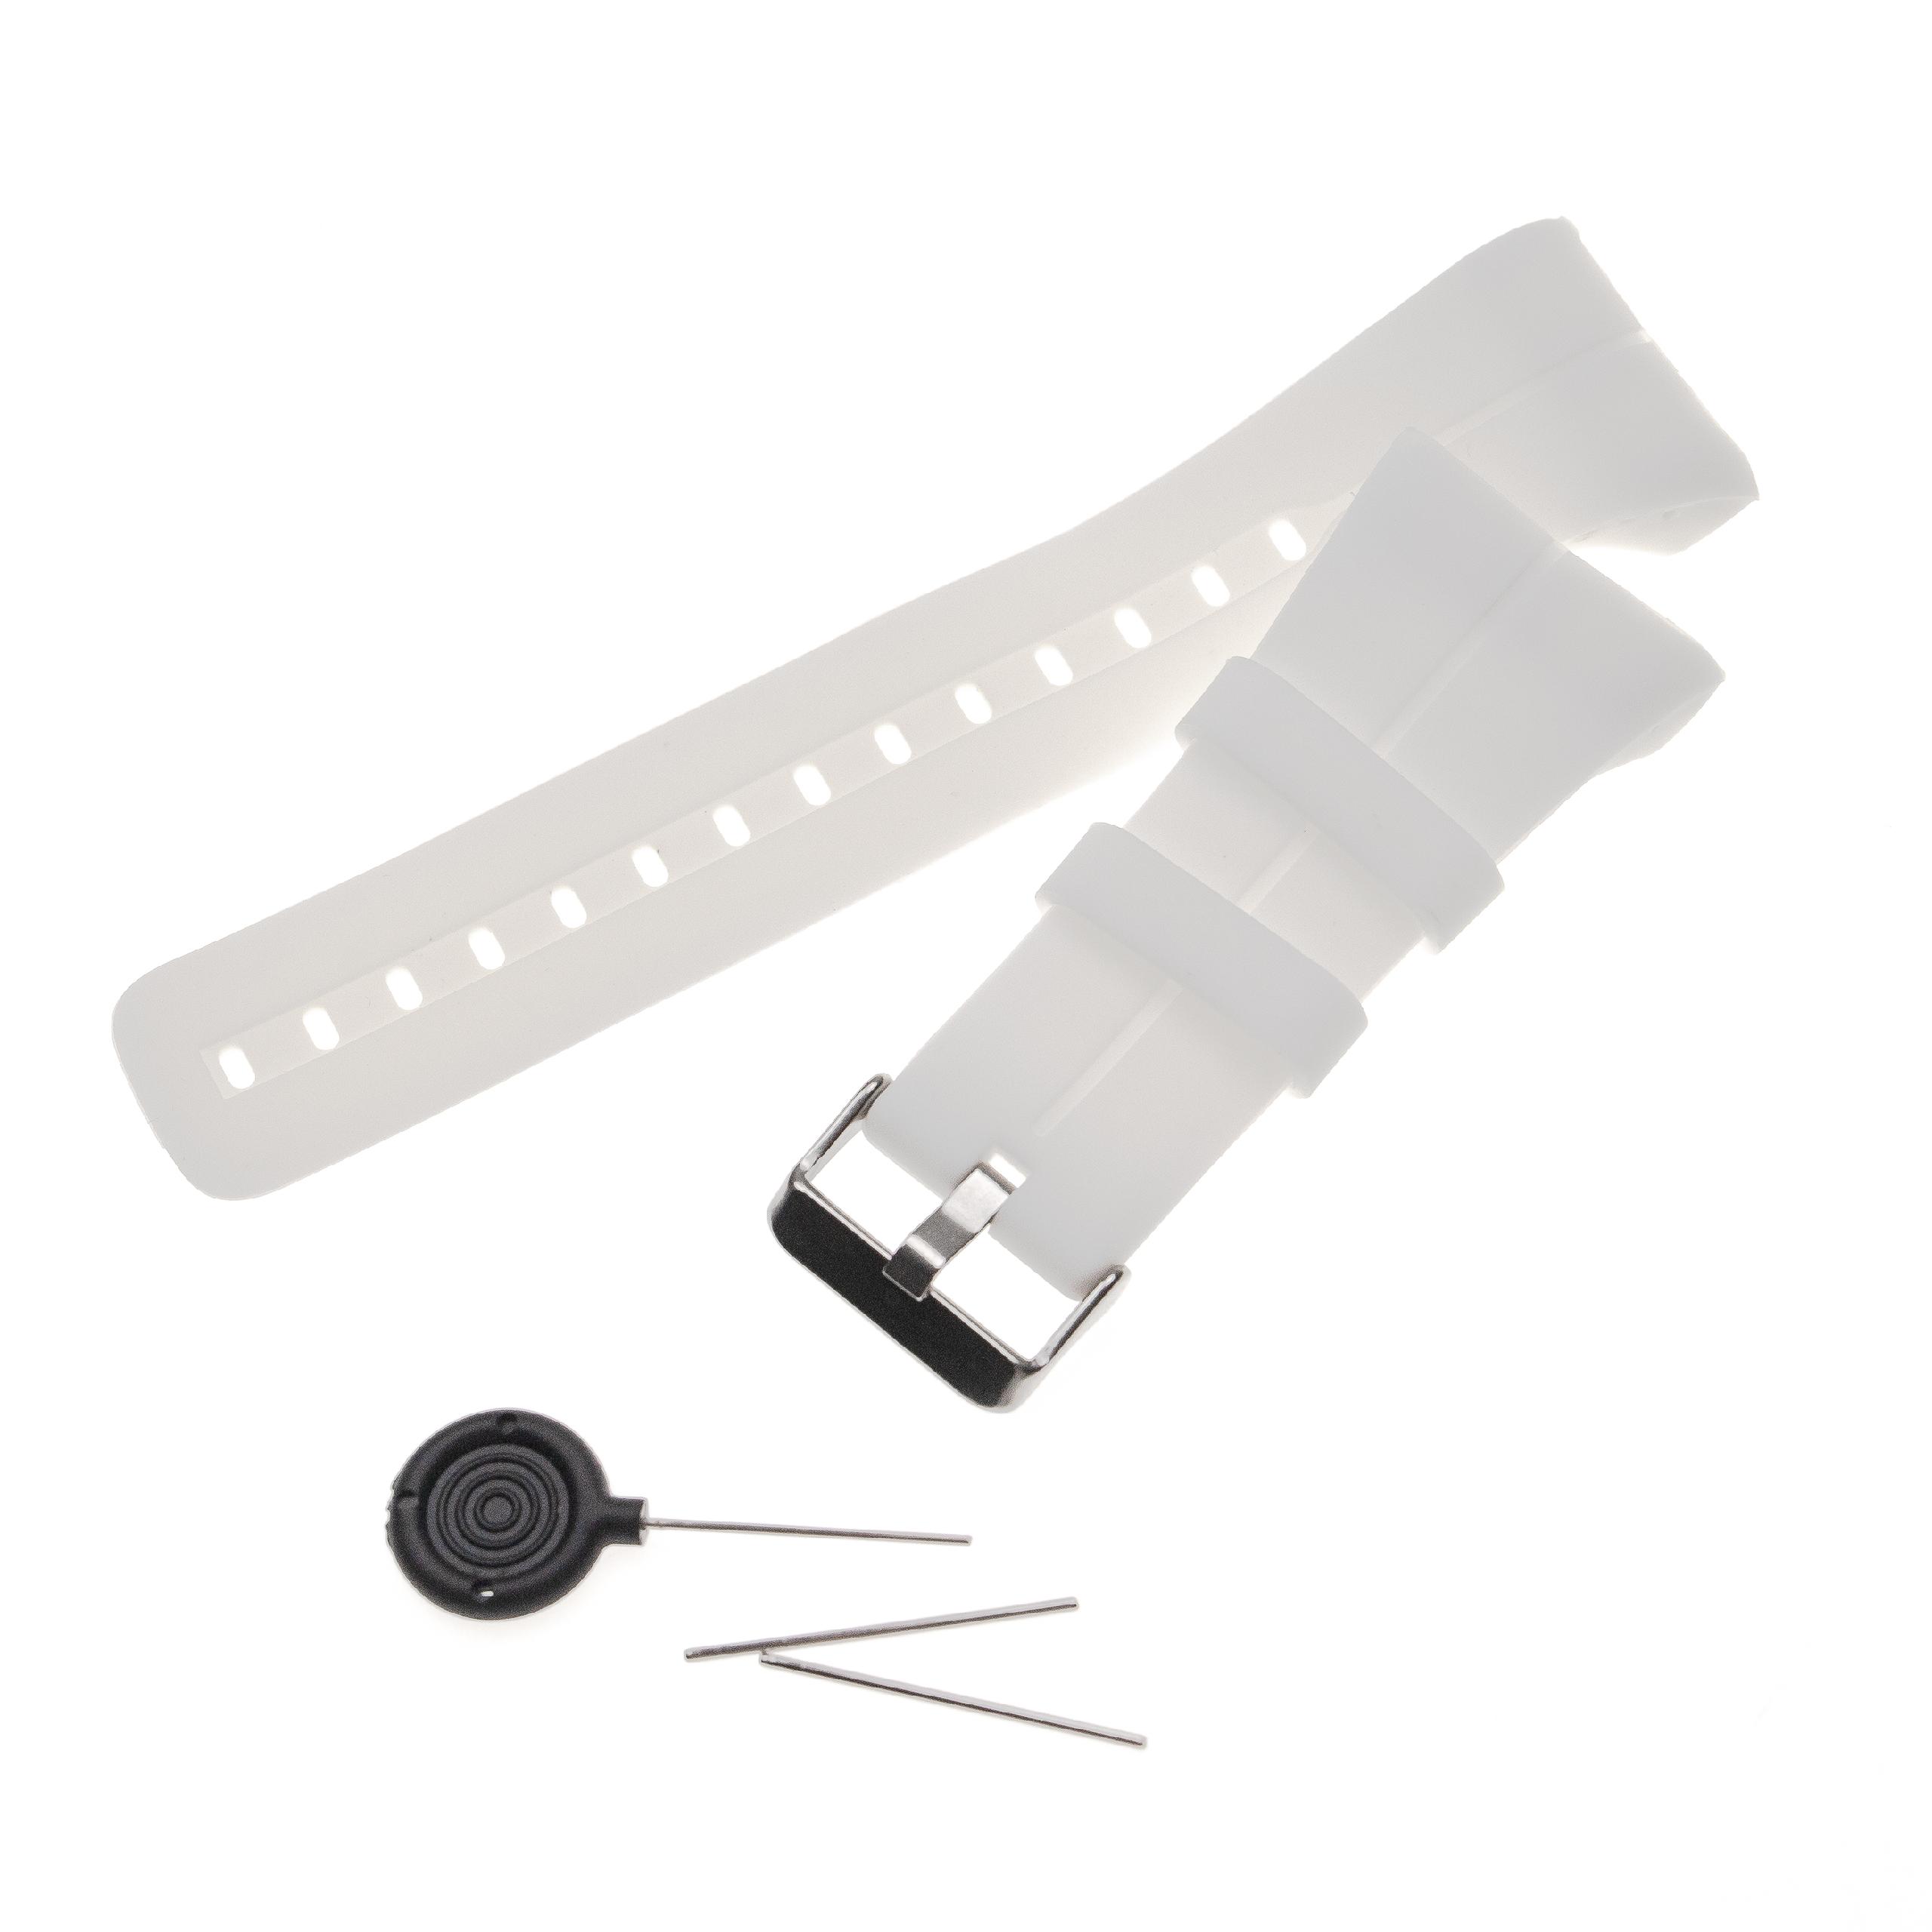 correa para Polar smartwatch - largo 14,5 + 8,9 cm, ancho 34 mm, silicona, blanco